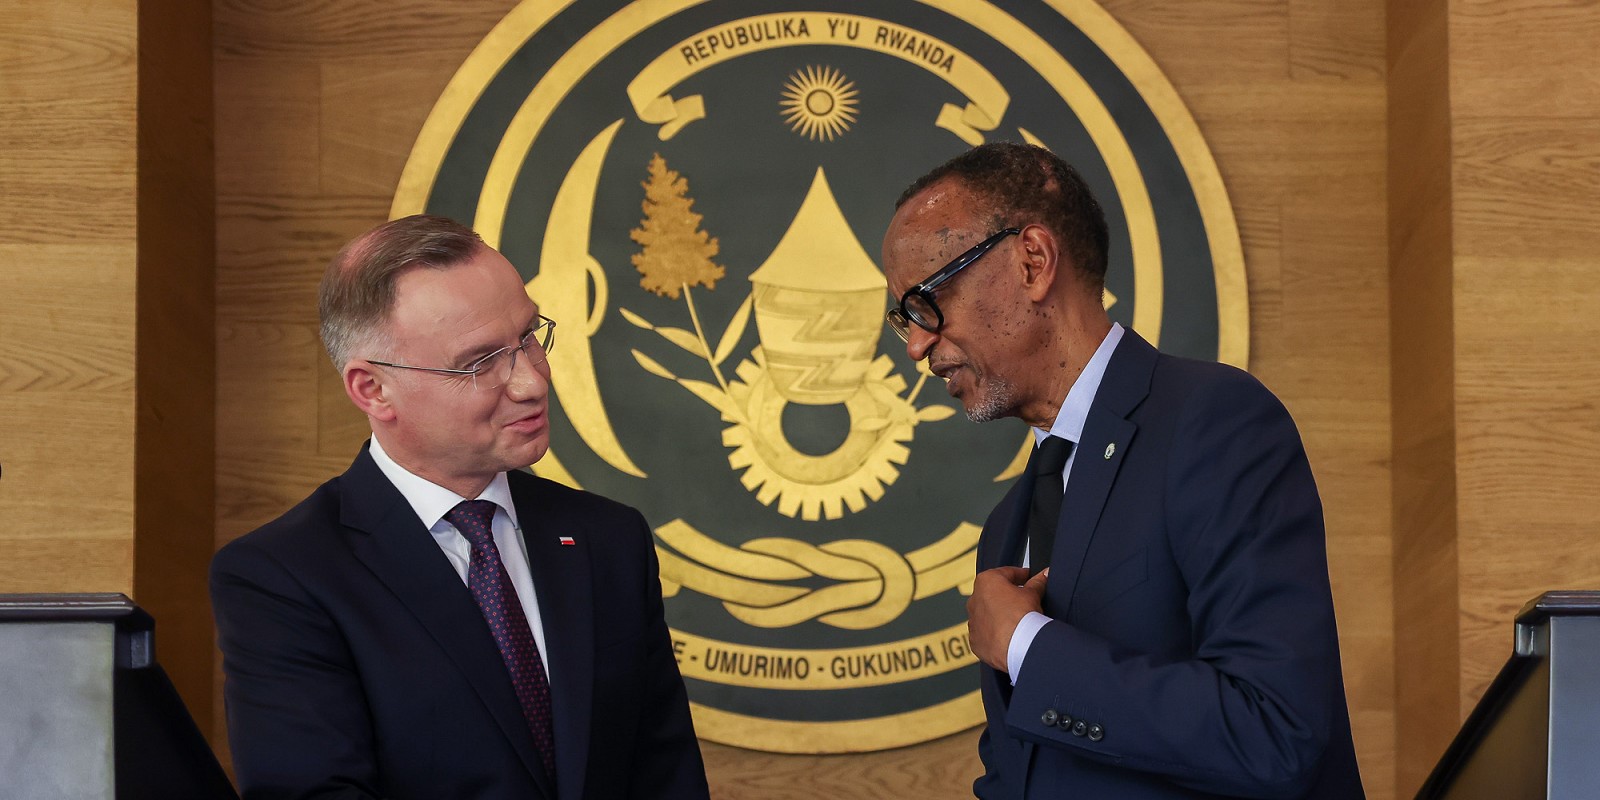 Demokratyczna Republika Konga skrytykowała polskiego prezydenta za współpracę z Rwandą